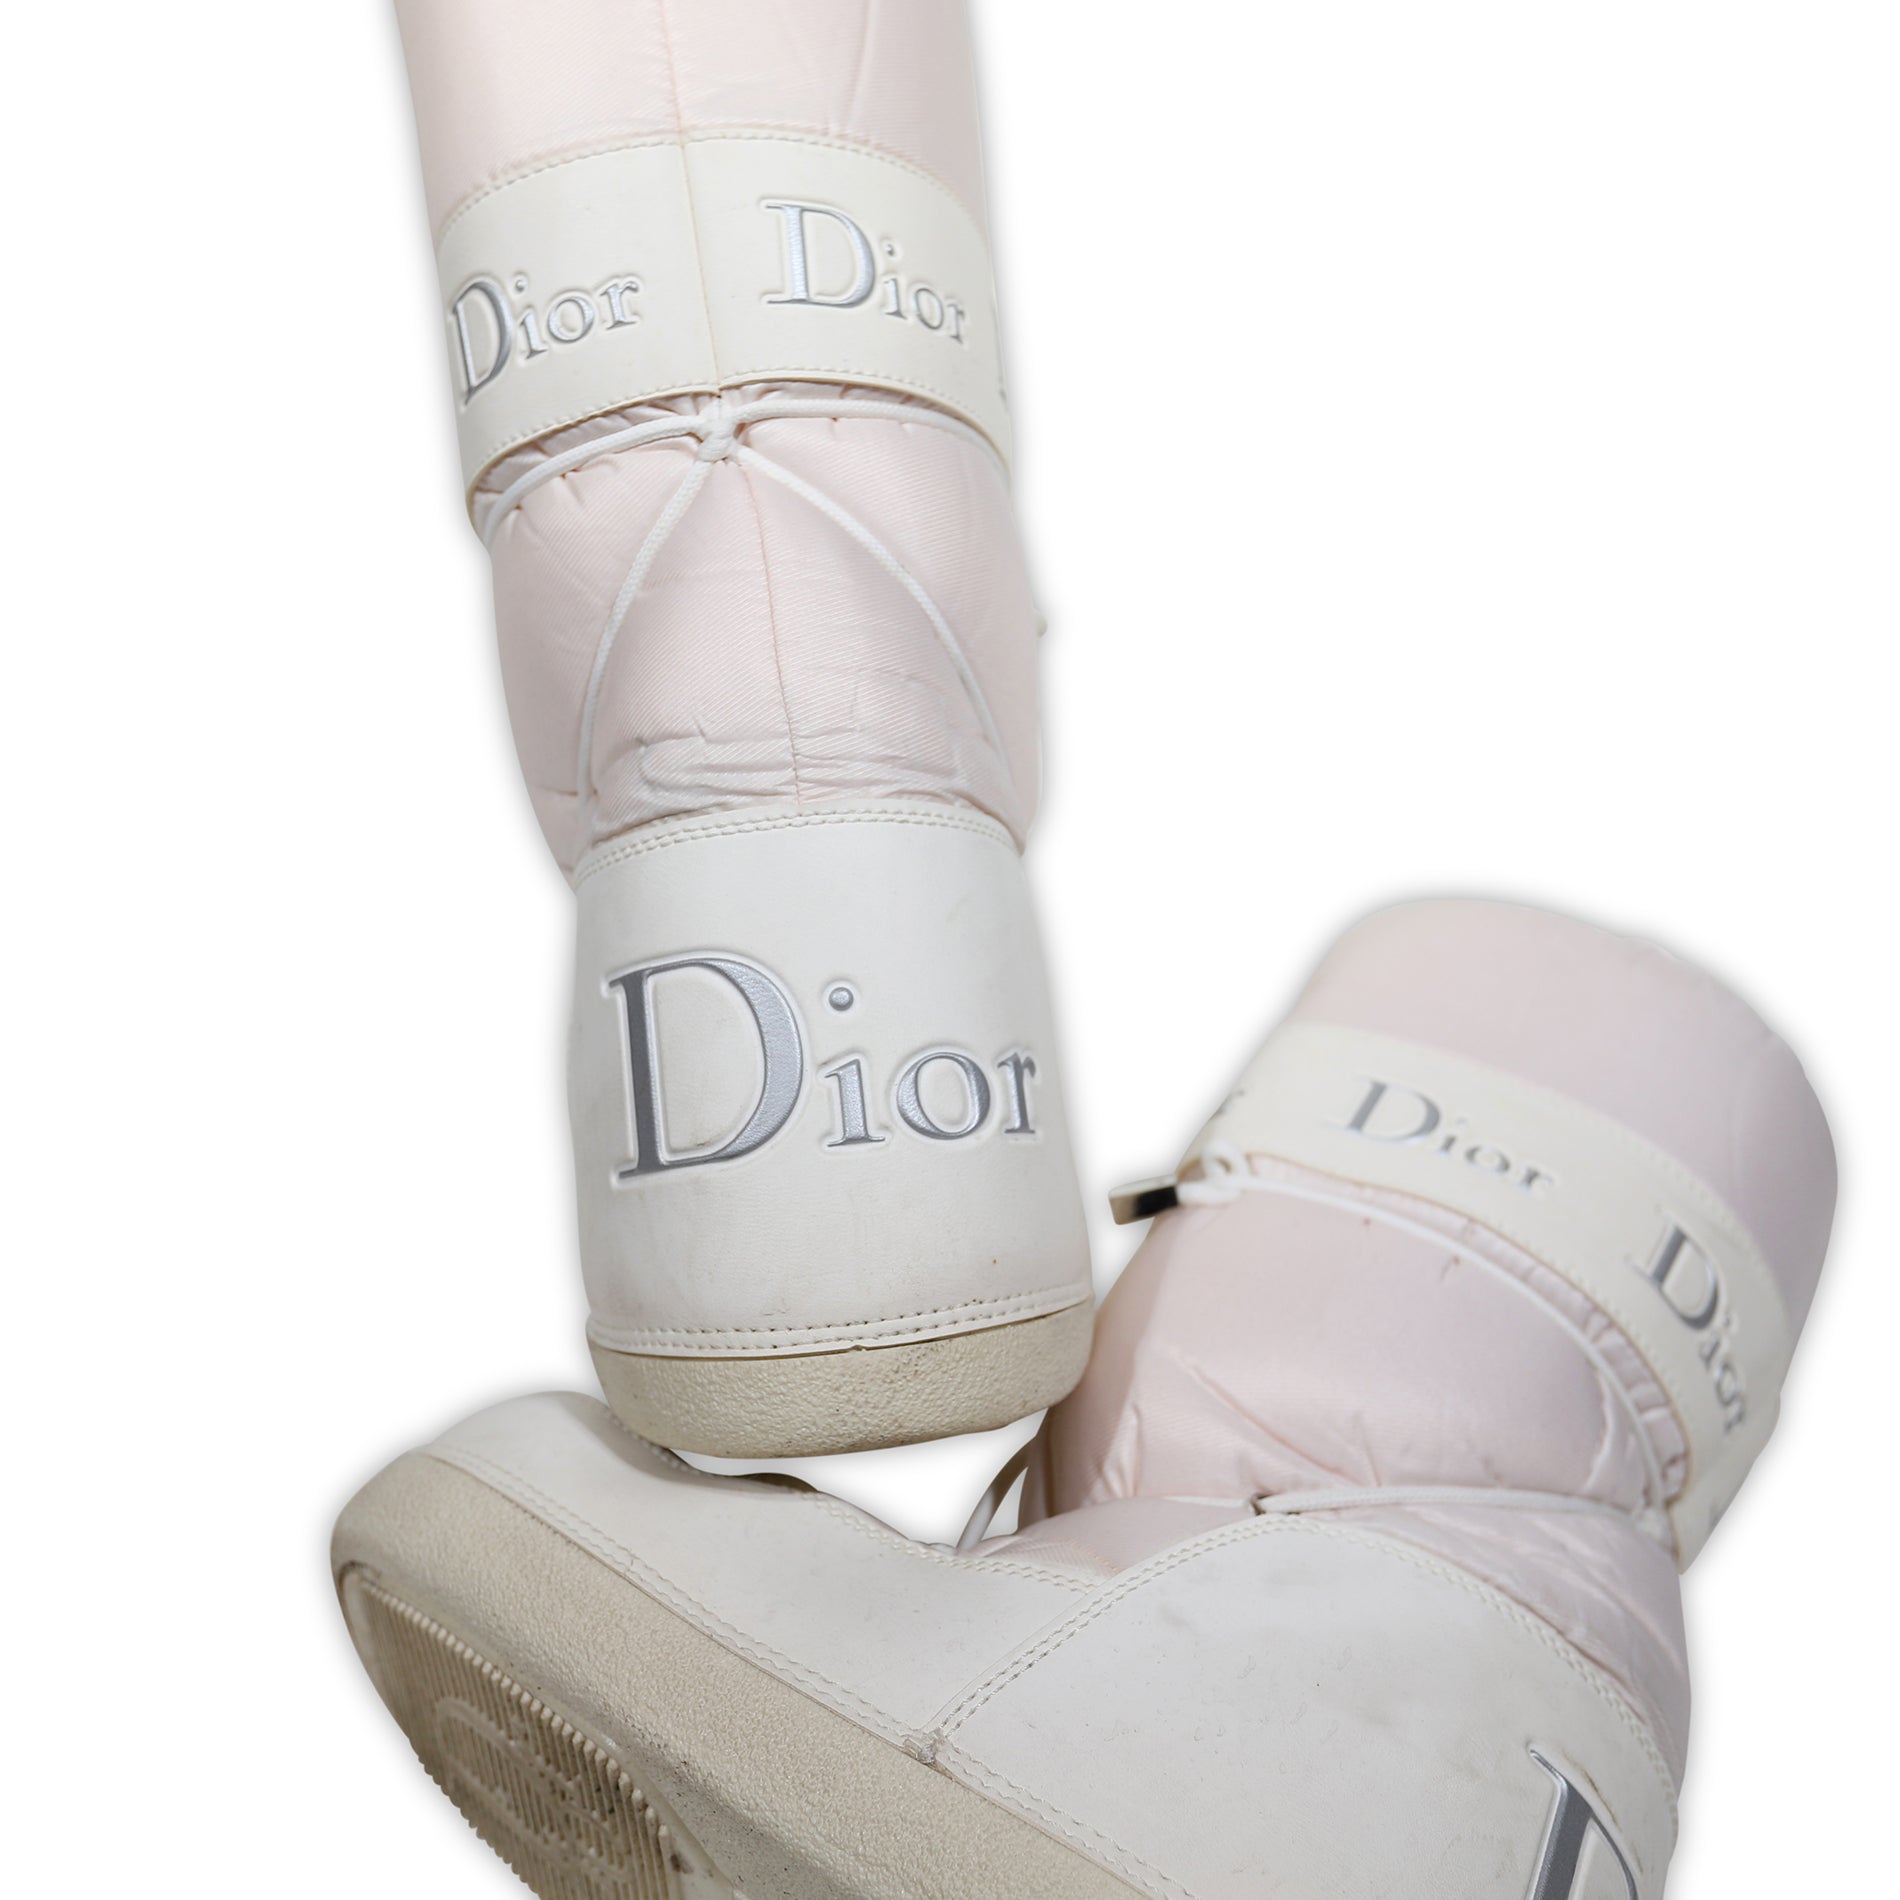 dior moon boots